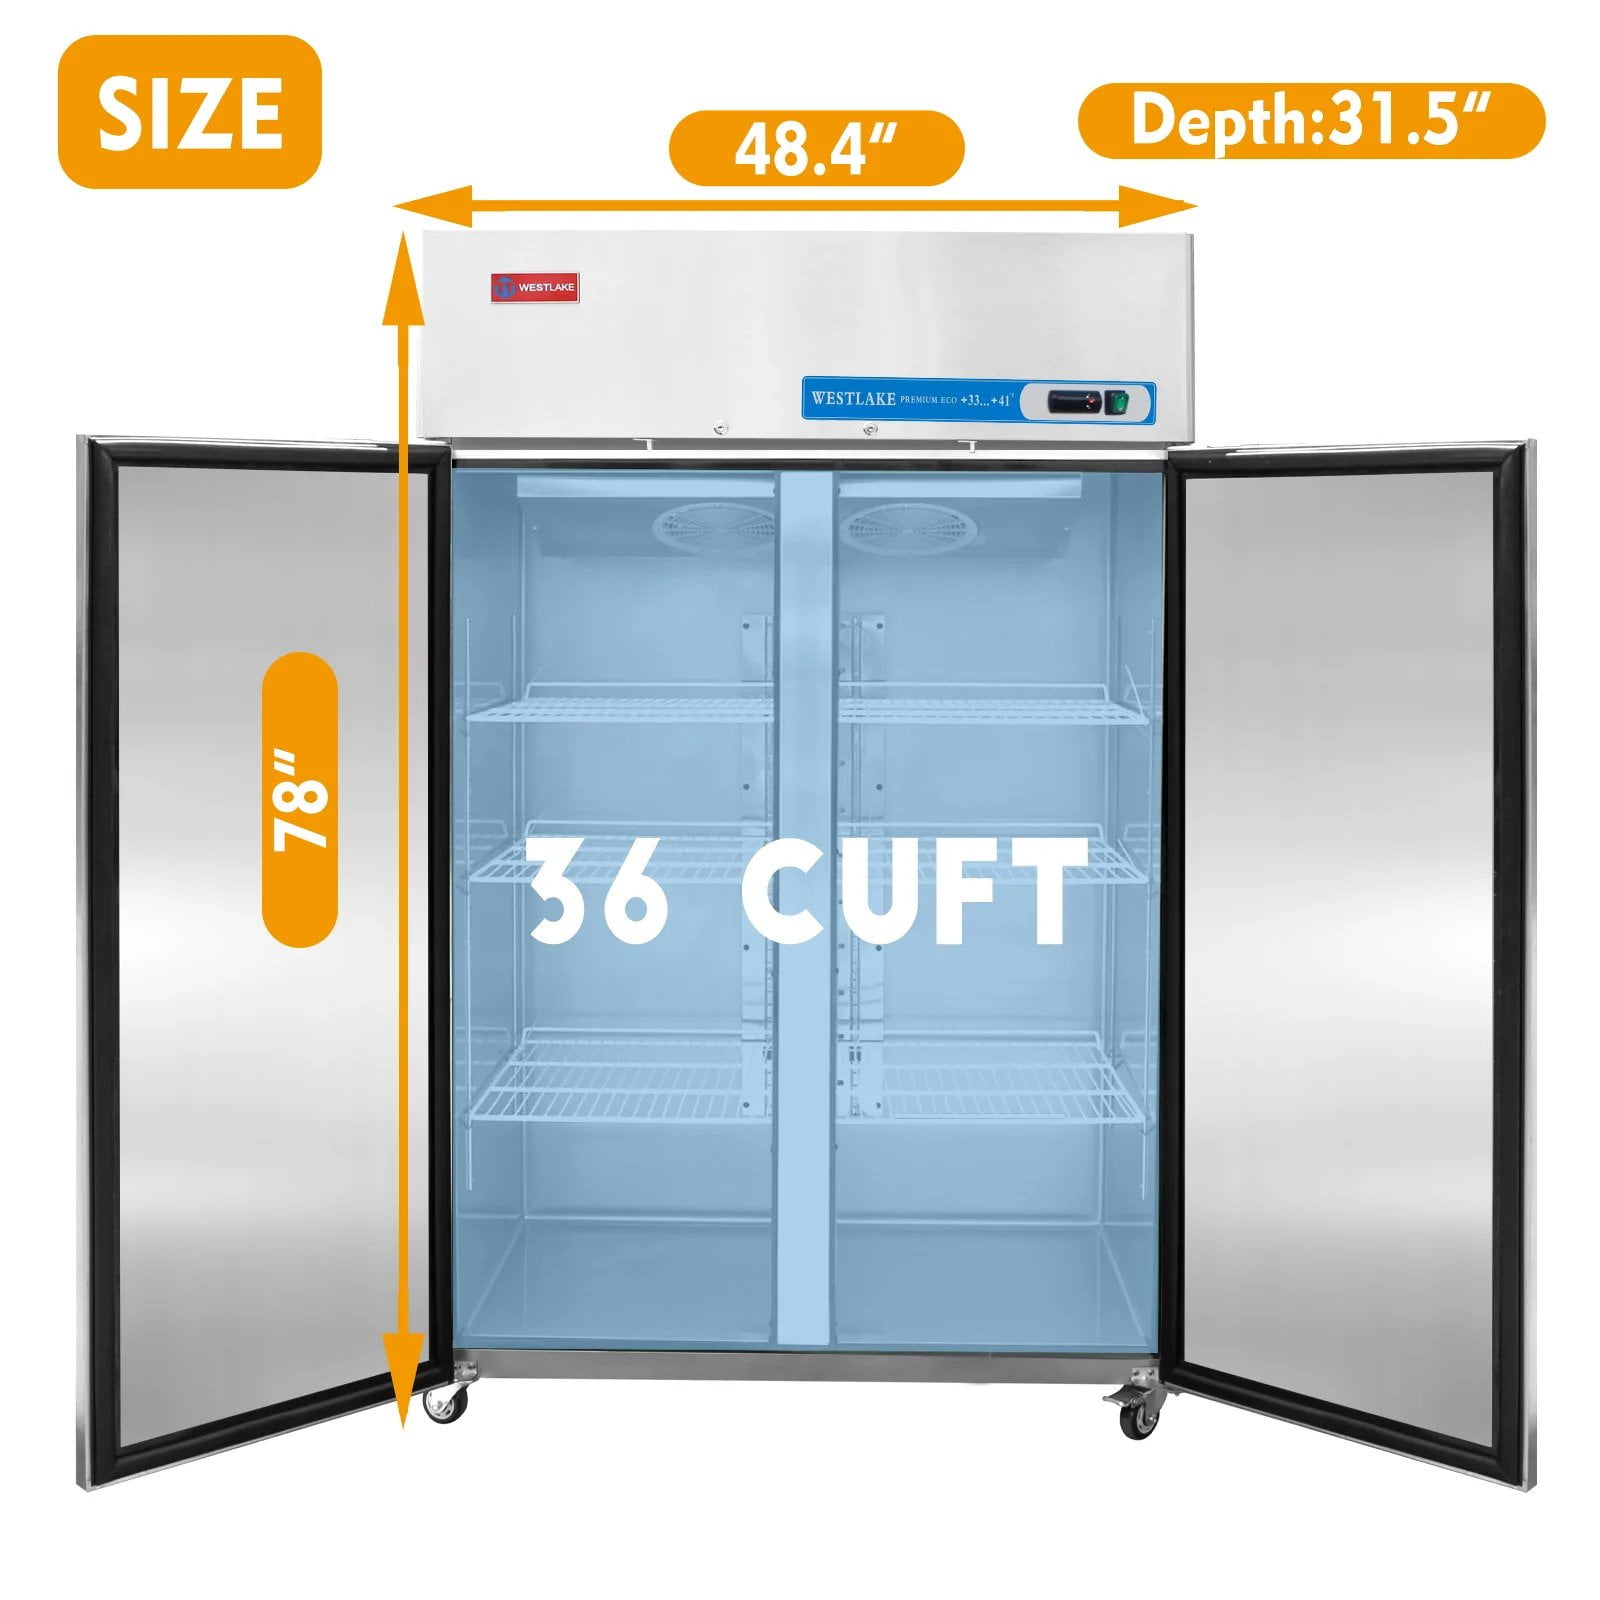  WESTLAKE Commercial Freezer 48W 2 door 2 Section Stainless  Steel Reach in Solid door Fan Cooling 36 Cu.ft Freezer for Restuarant, Bar,  Shop, etc : Industrial & Scientific